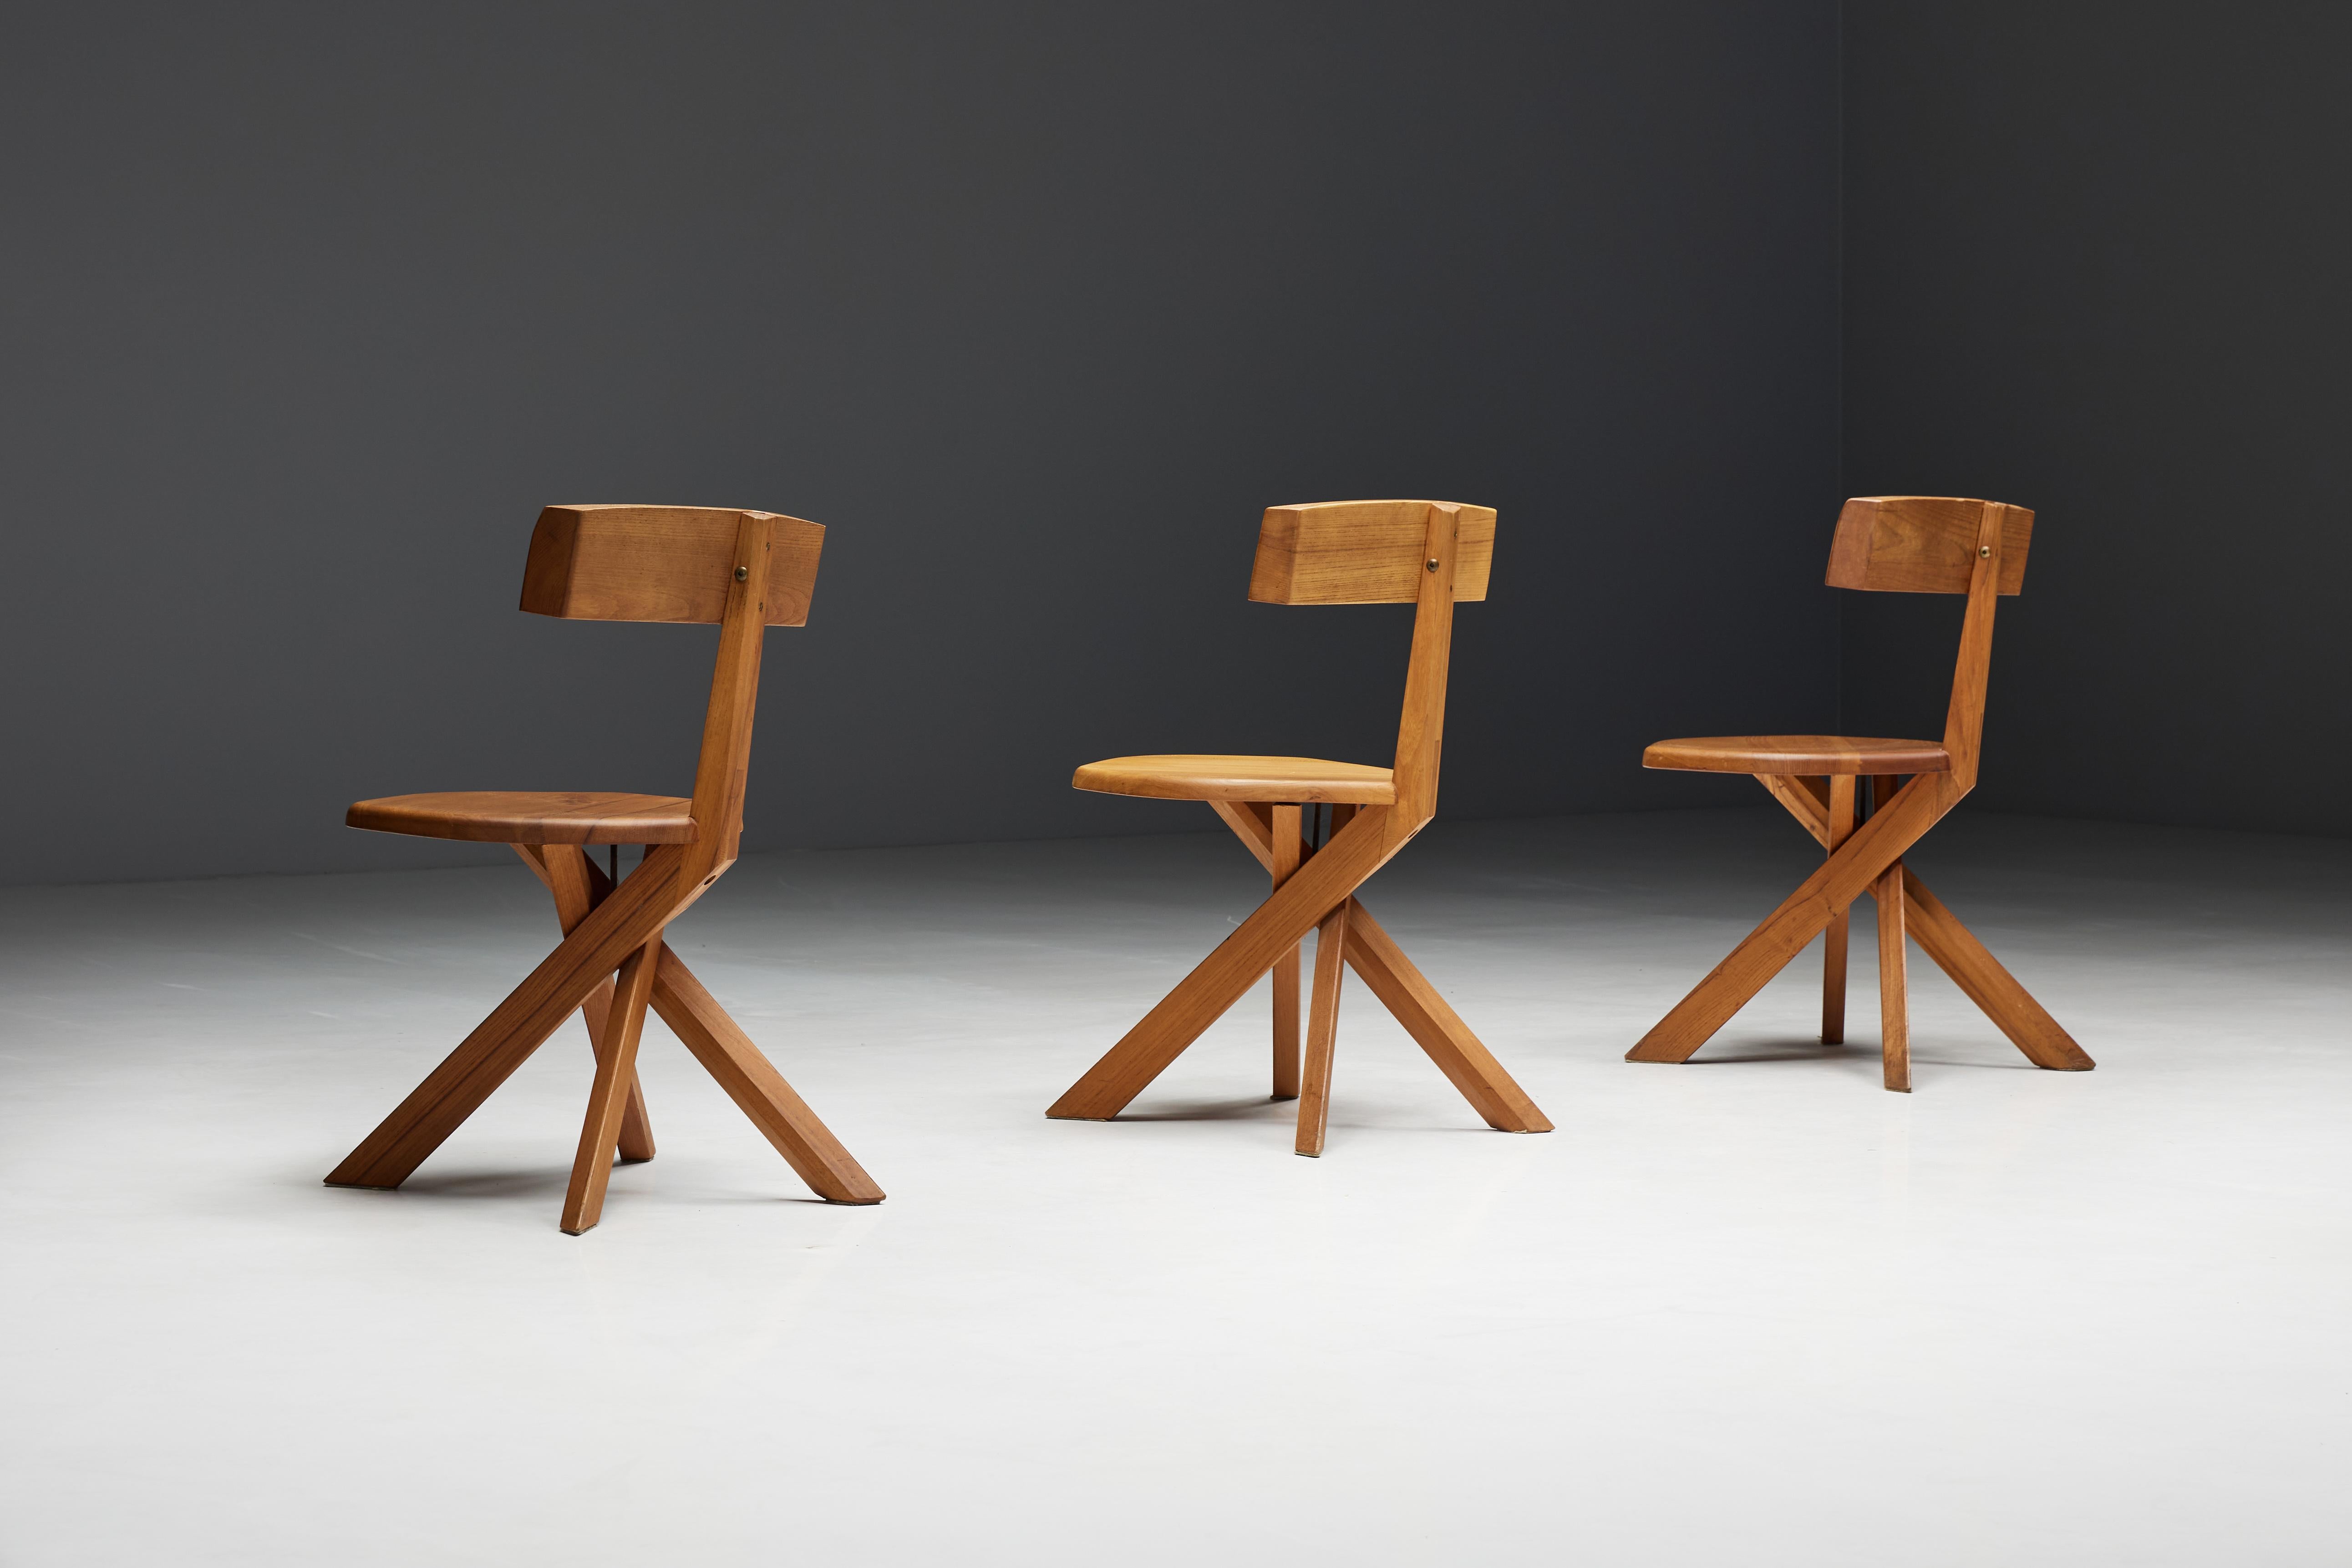 Chaises de salle à manger Pierre Chapo S34 des années 1970 en France. Ces chaises incarnent l'esthétique unique typique des designs emblématiques de Pierre Chapo. Le piétement en croix caractéristique des chaises s'harmonise parfaitement avec le